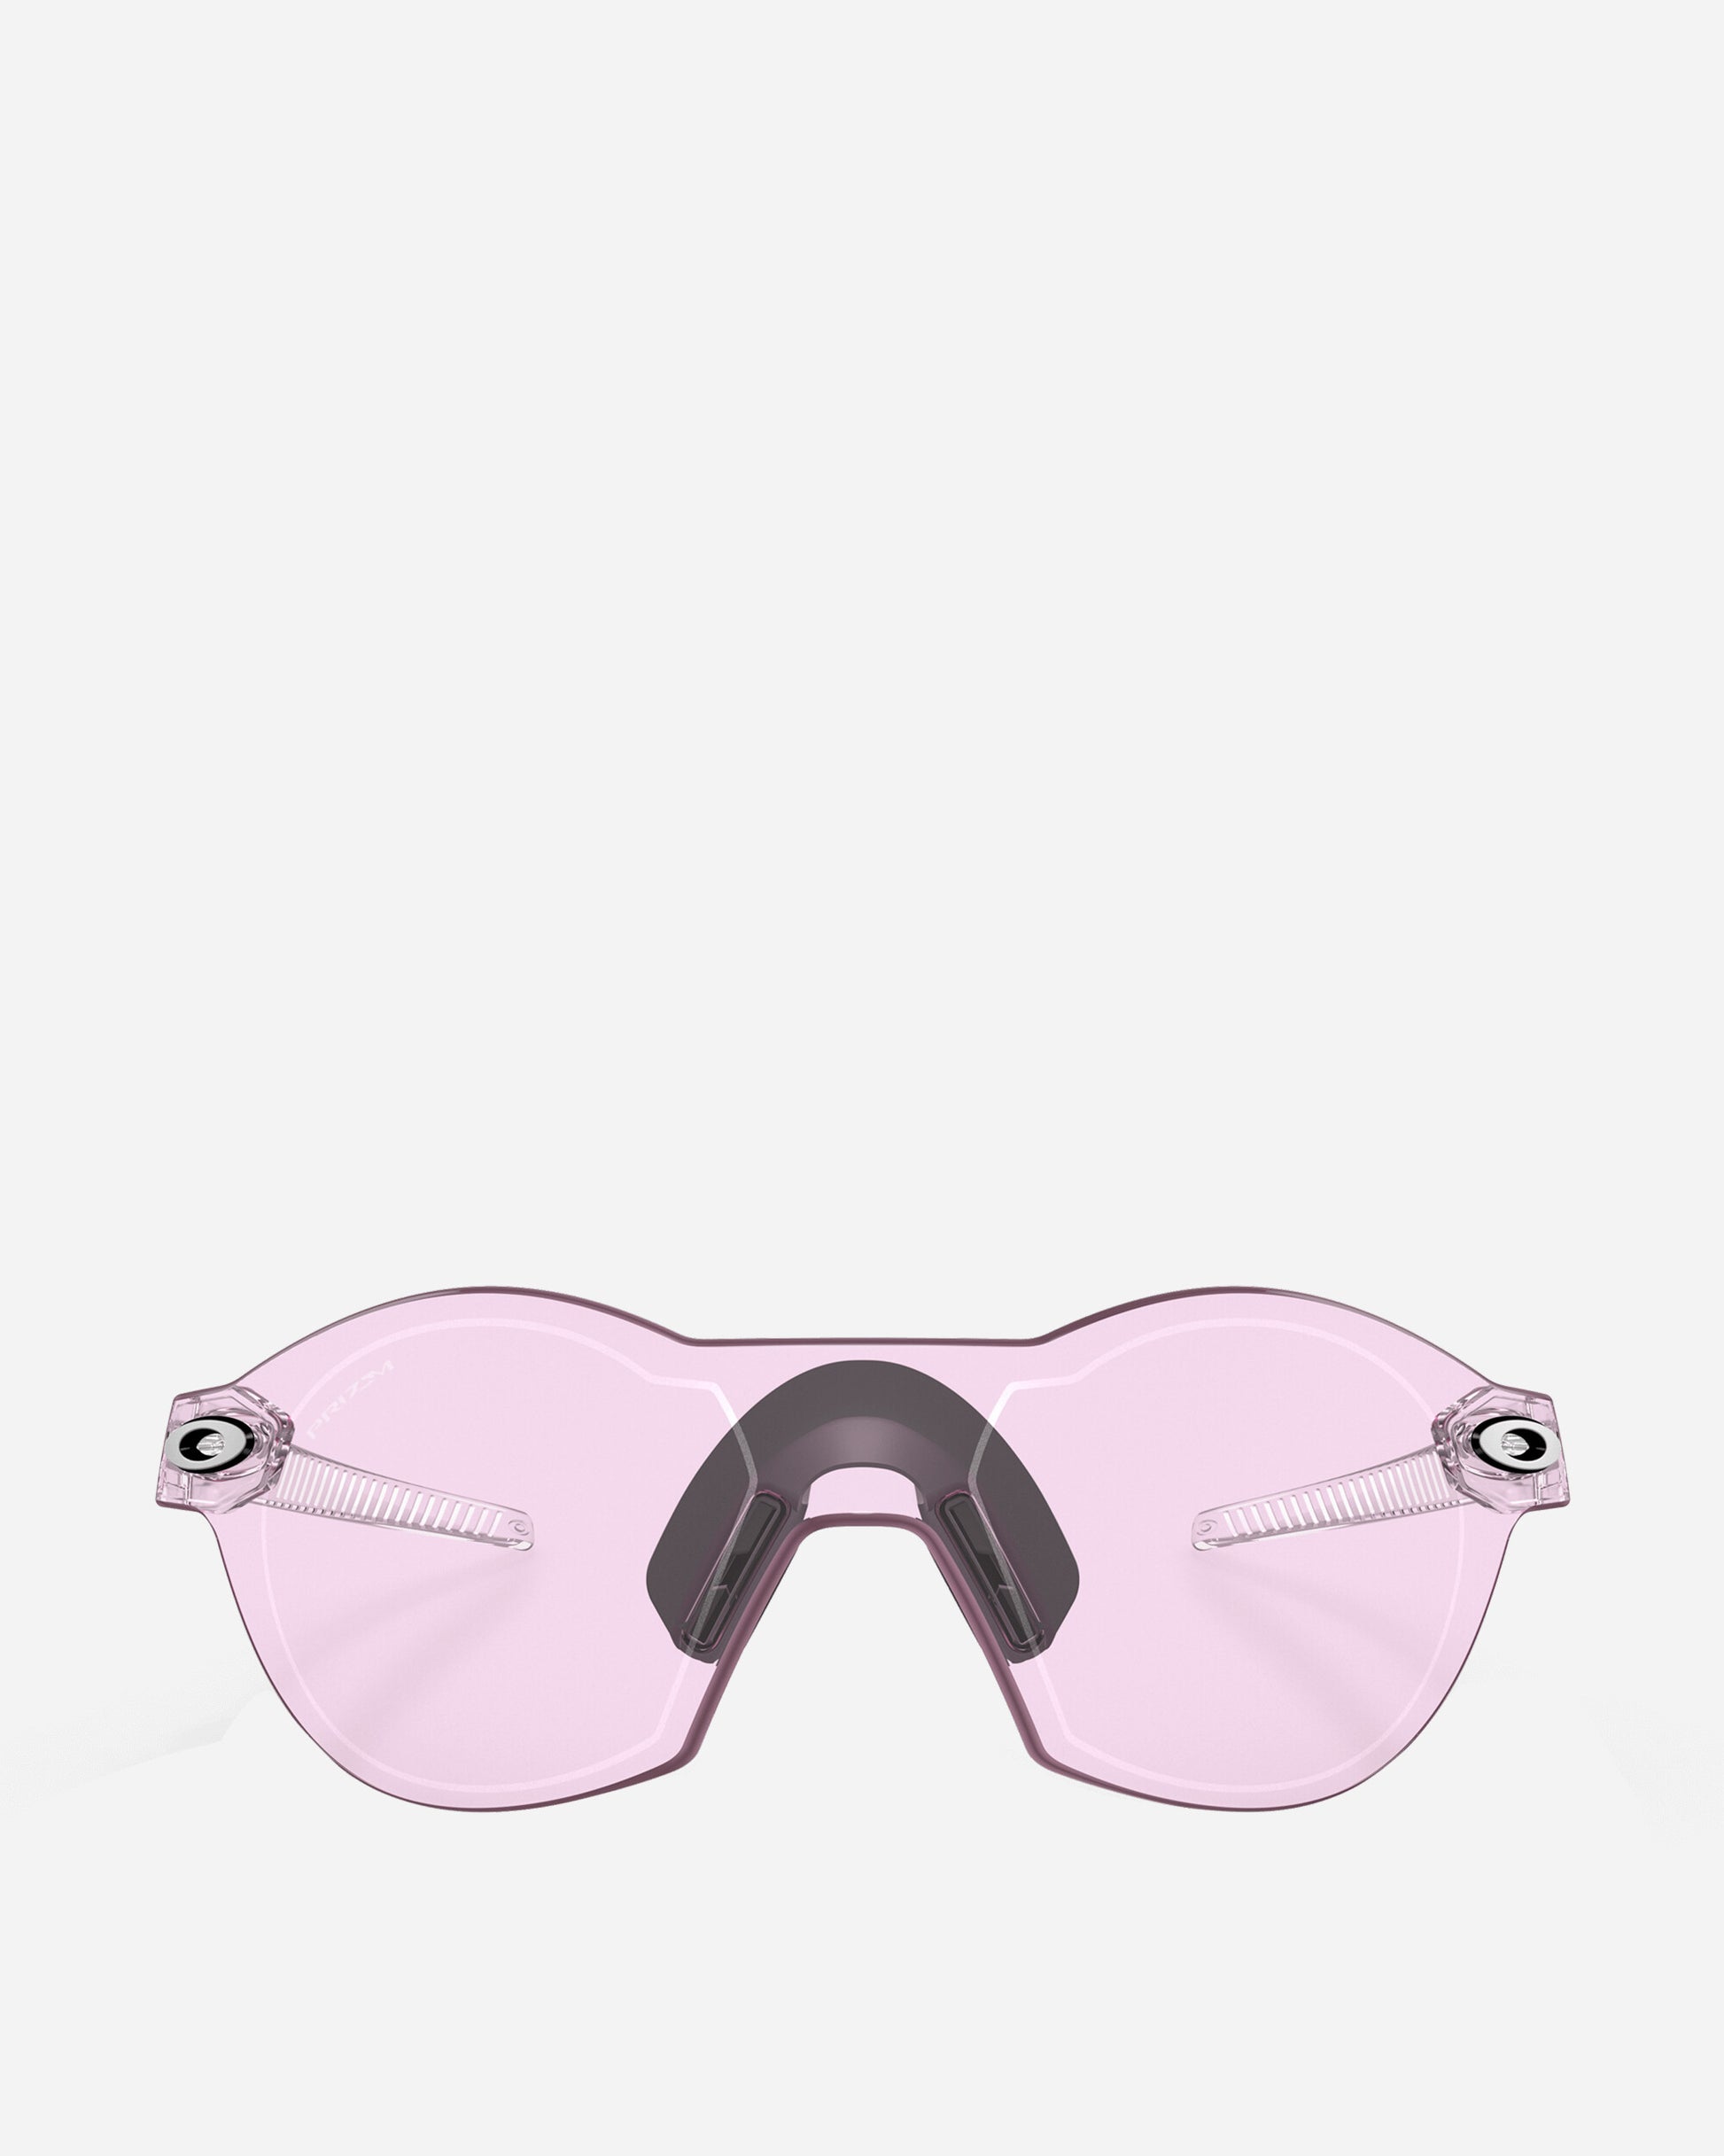 Oakley Re:Subzero Clear Eyewear Sunglasses OO9098 08